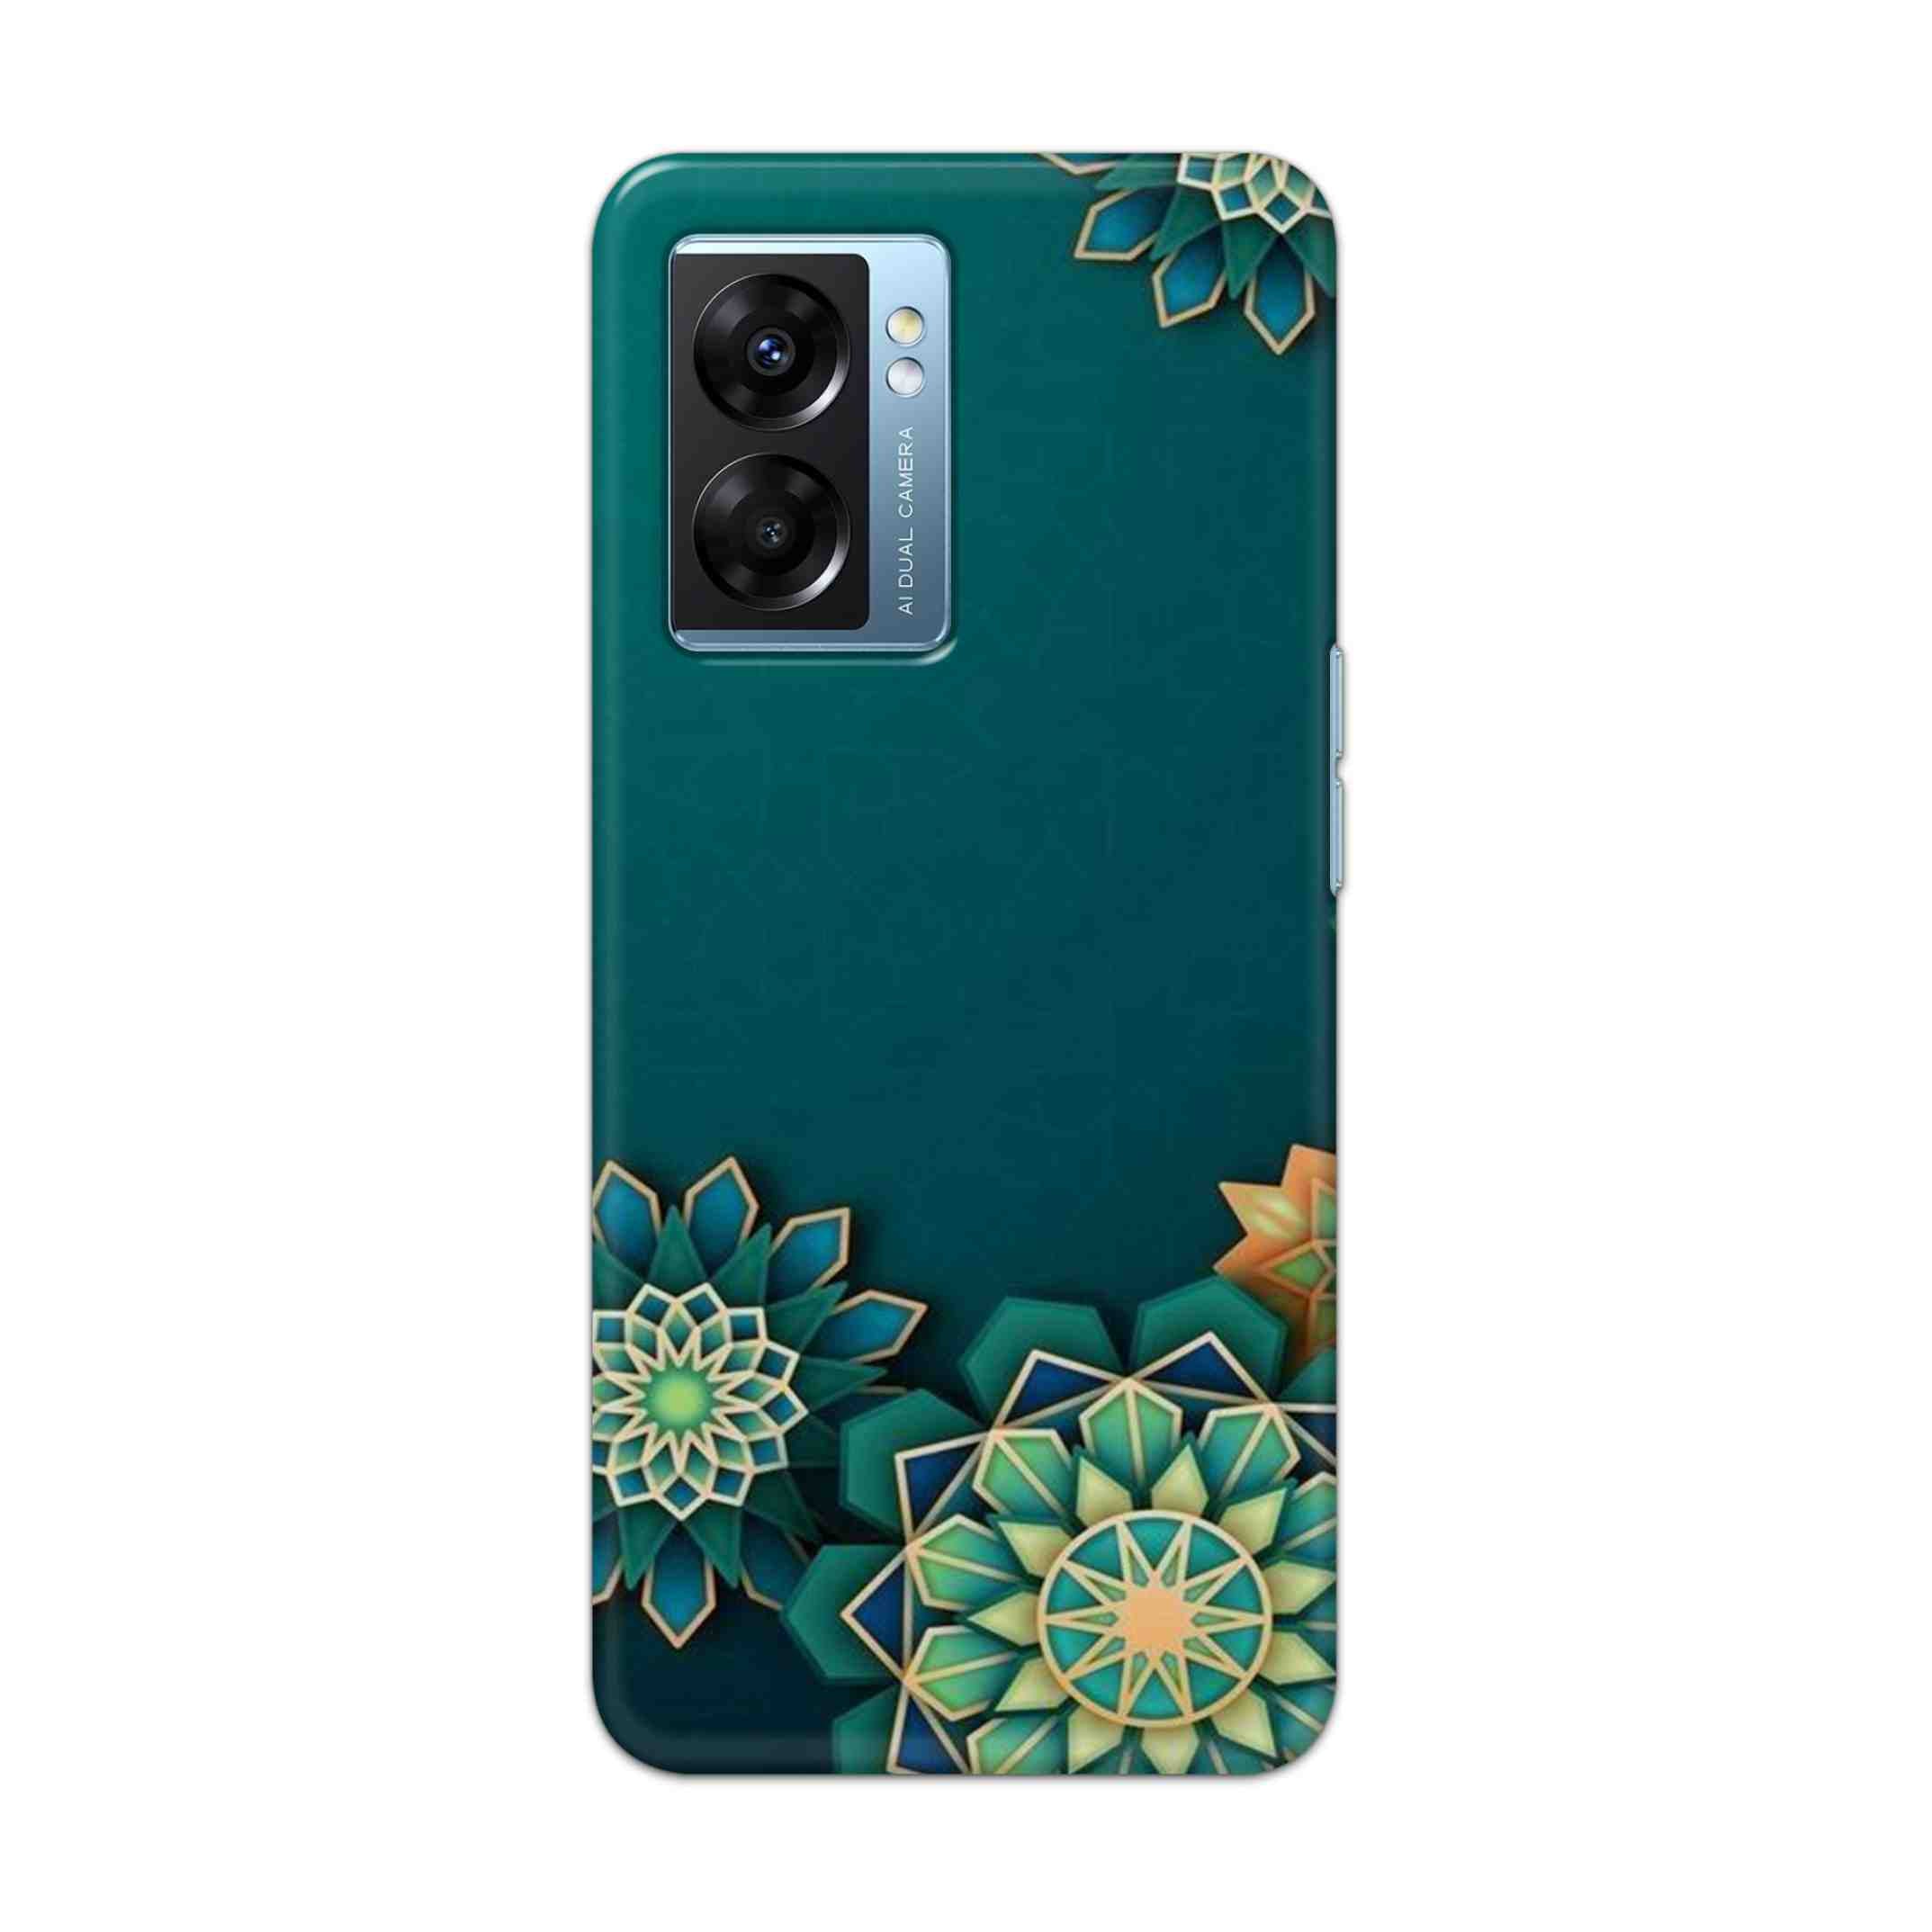 Buy Green Flower Hard Back Mobile Phone Case Cover For OPPO K10 5G Online